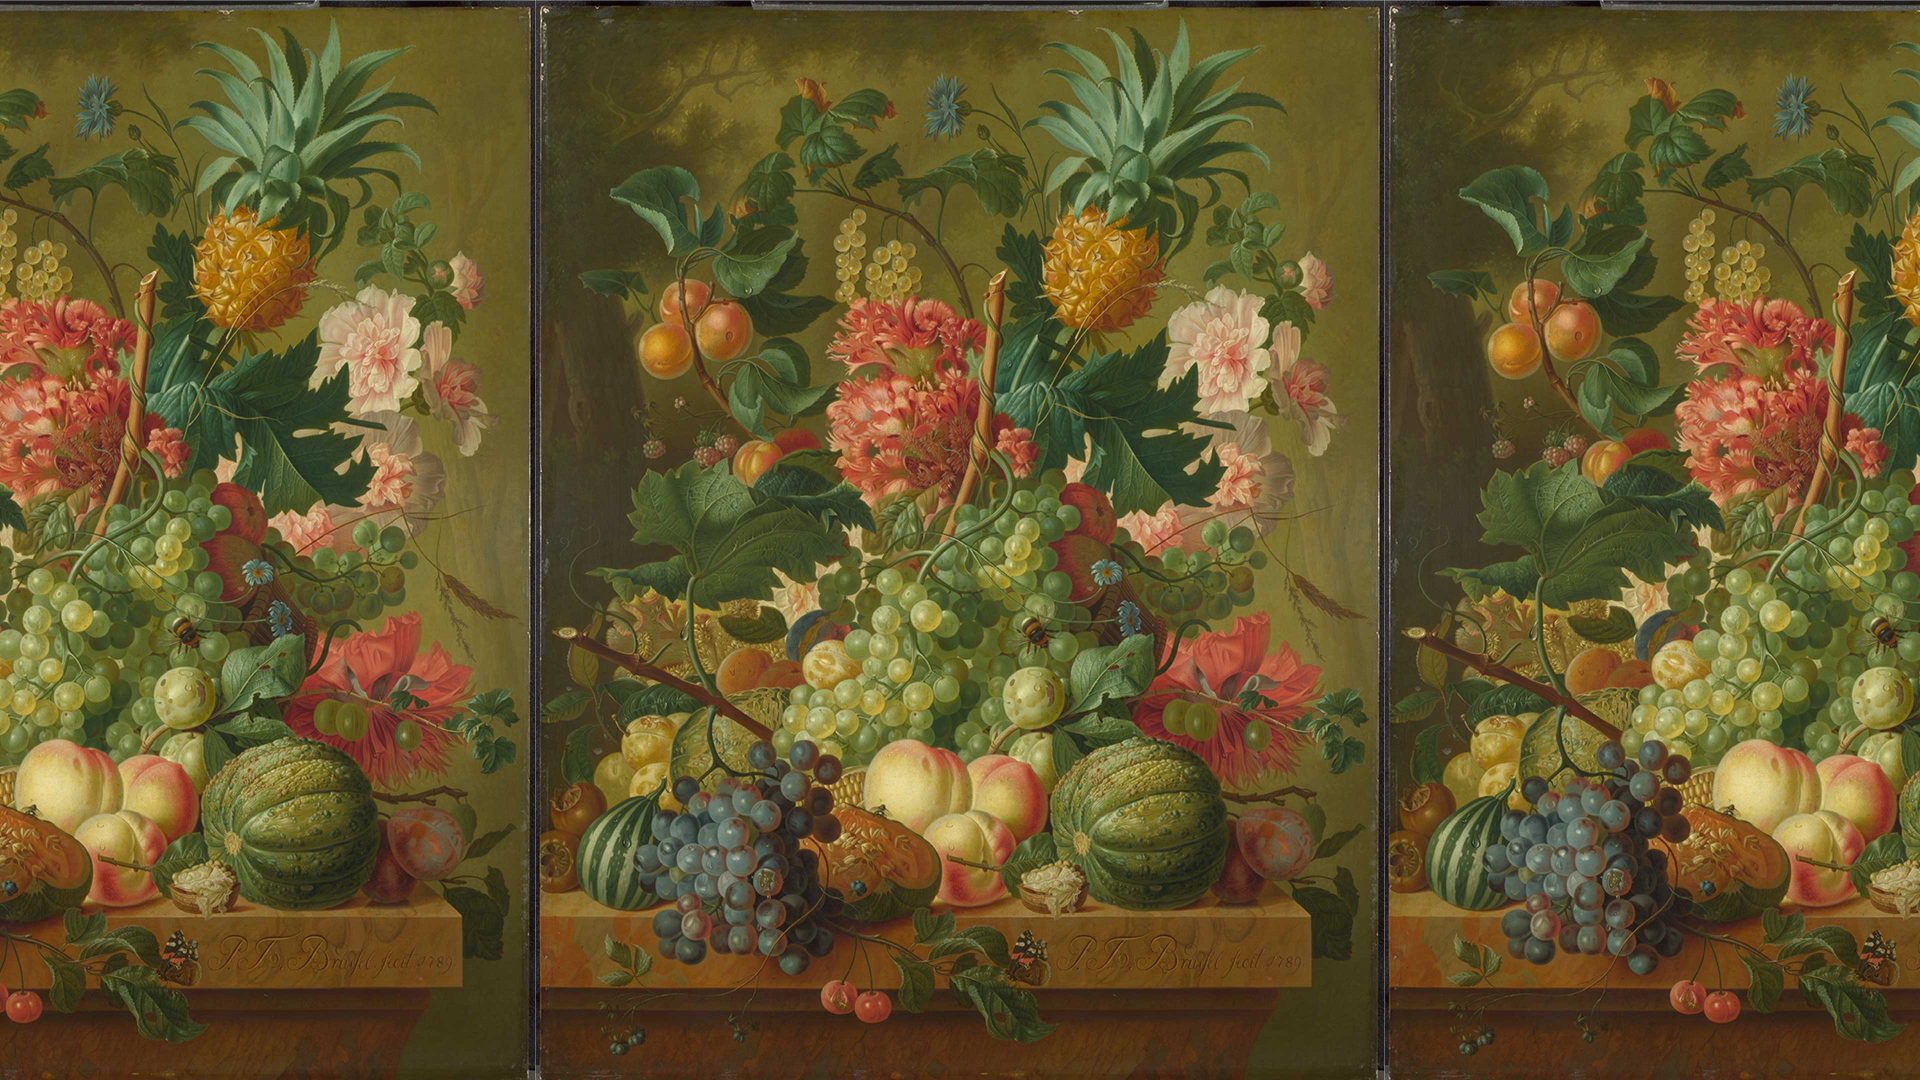 Bloeiende sinaasappels: de simpele geneugten van Hollandse bloemenschilderijen